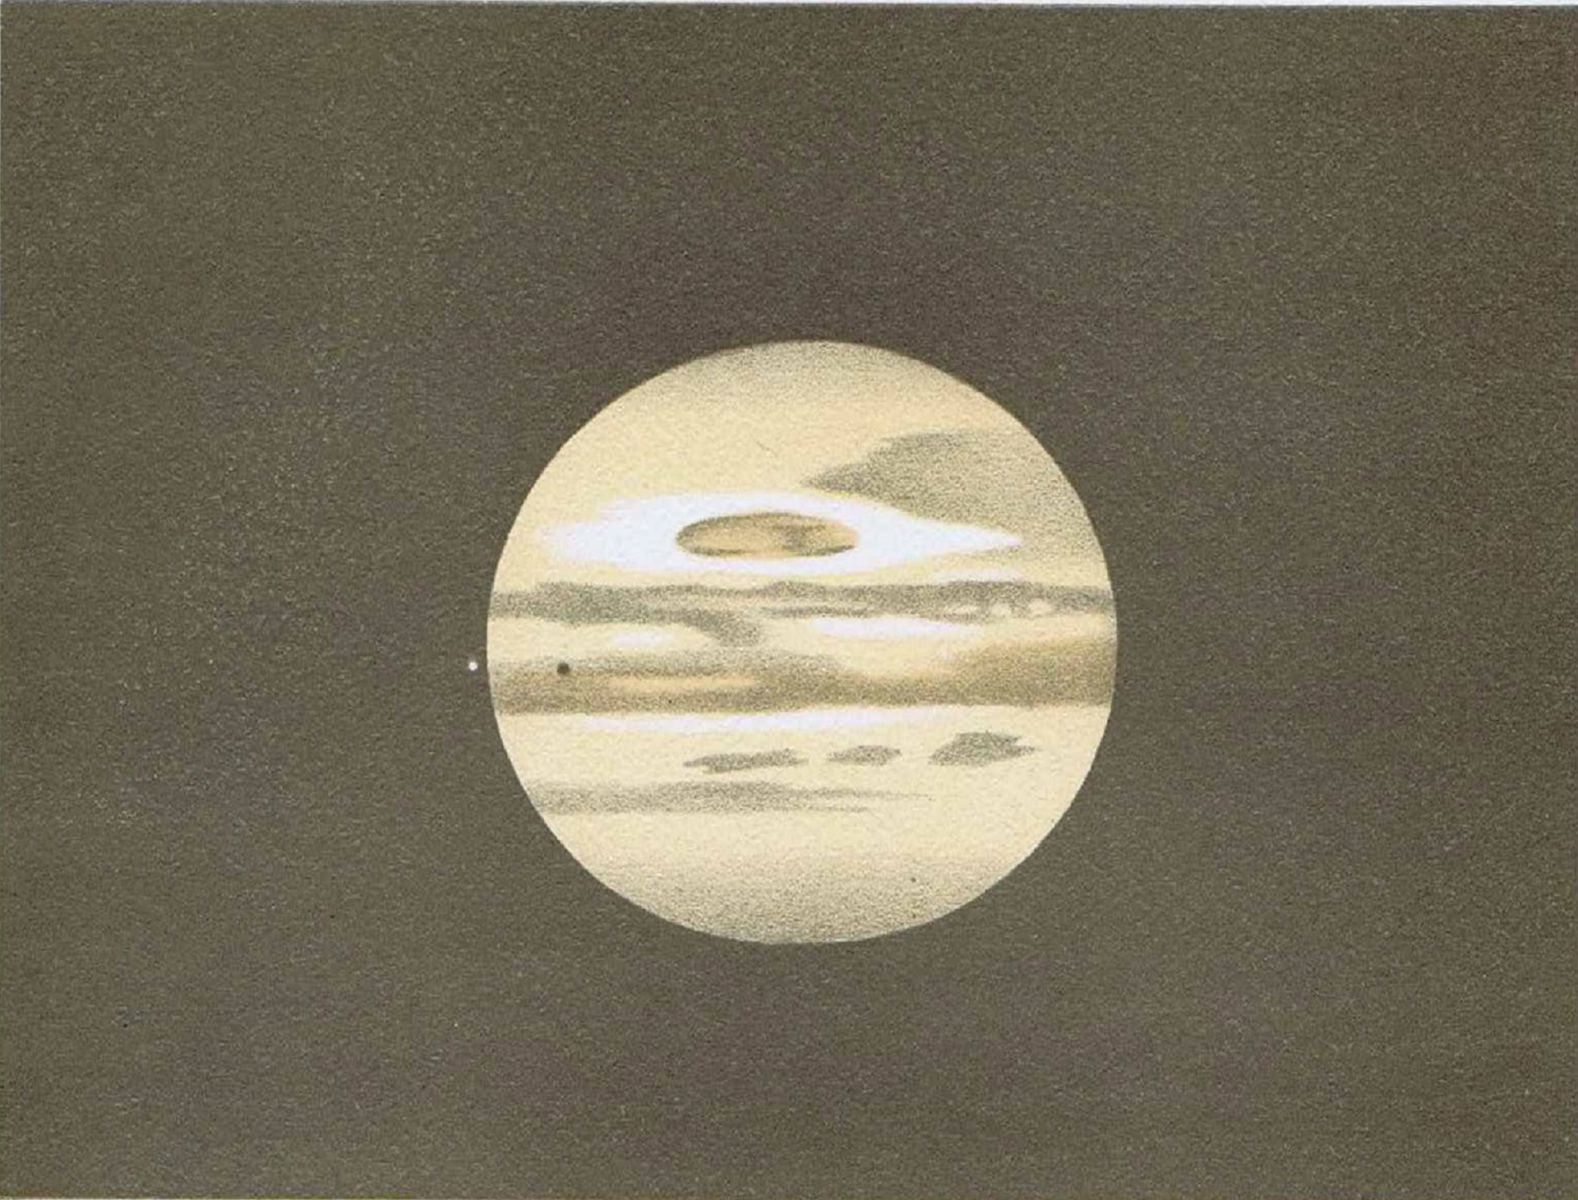 Ilustração do planeta Júpiter